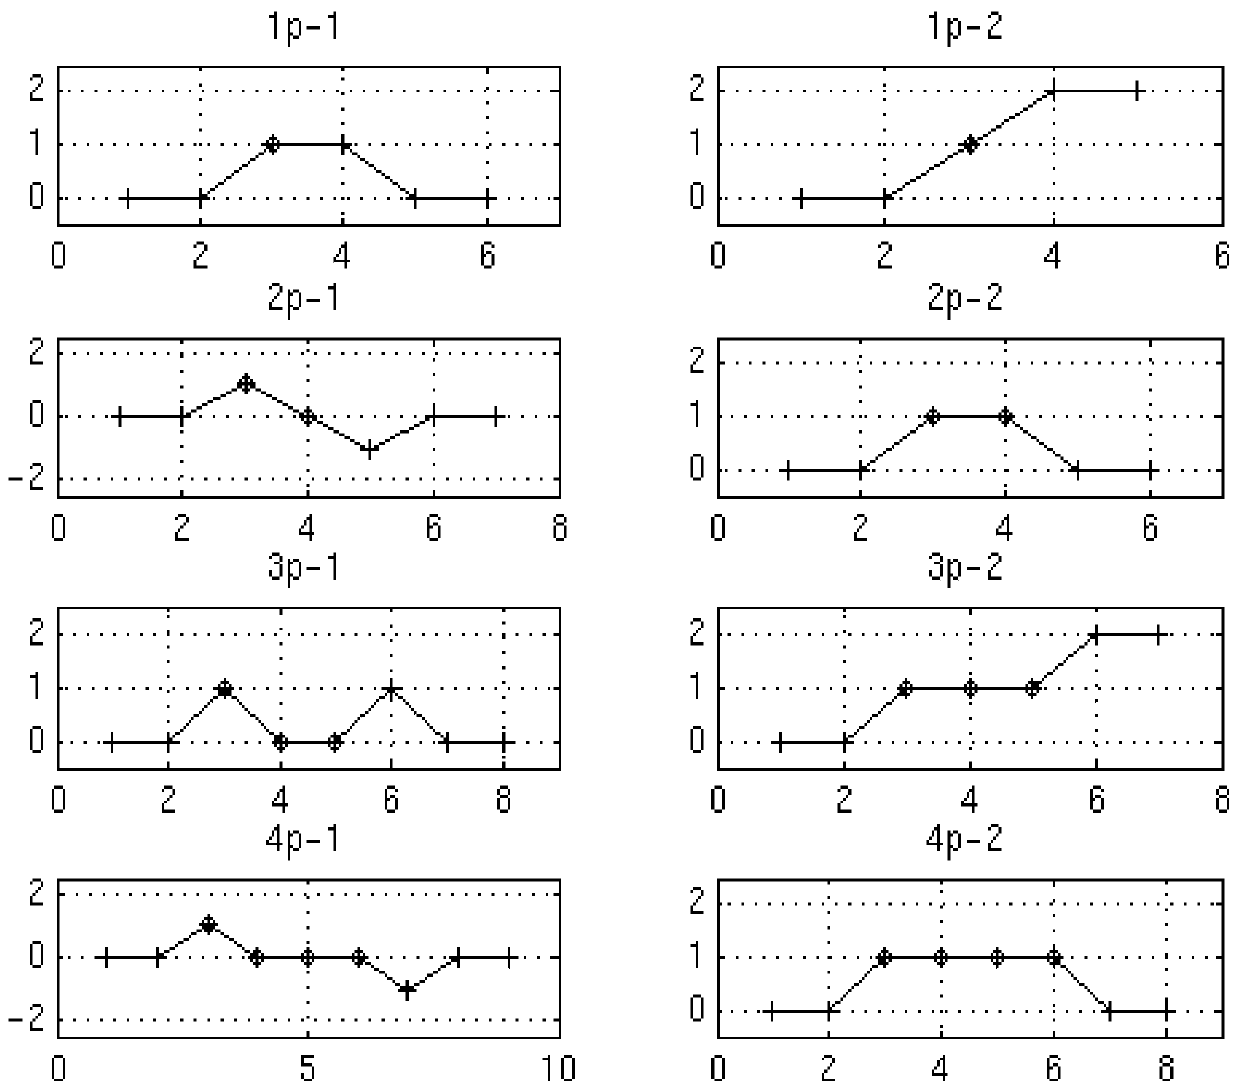 Digital detection and error correction algorithm for fsk modulation system